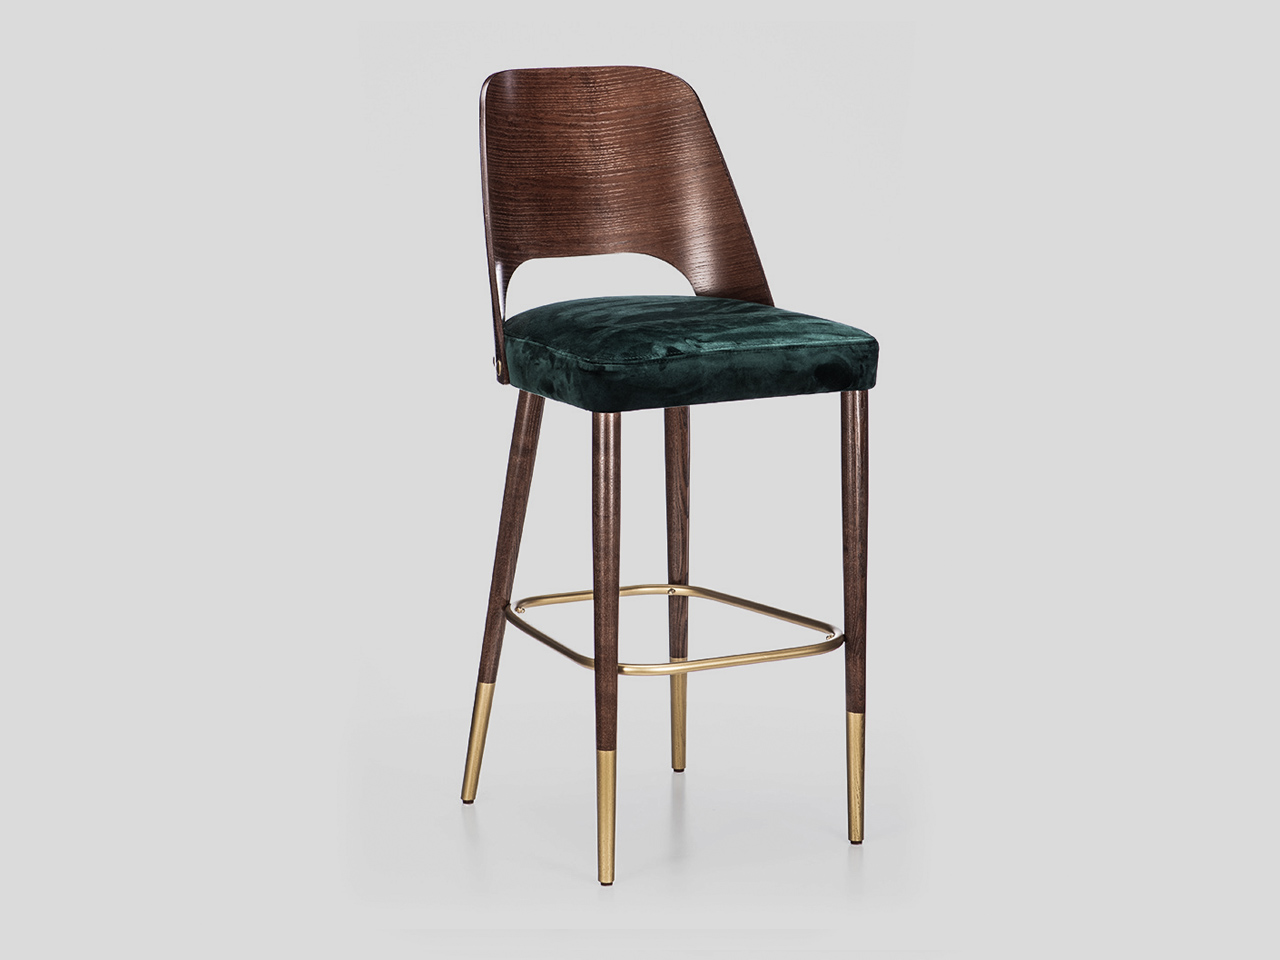 Moderna barska tapacirana stolica sa drvenim naslonom materijali po zelji Linea Milanovic namestaj po meri